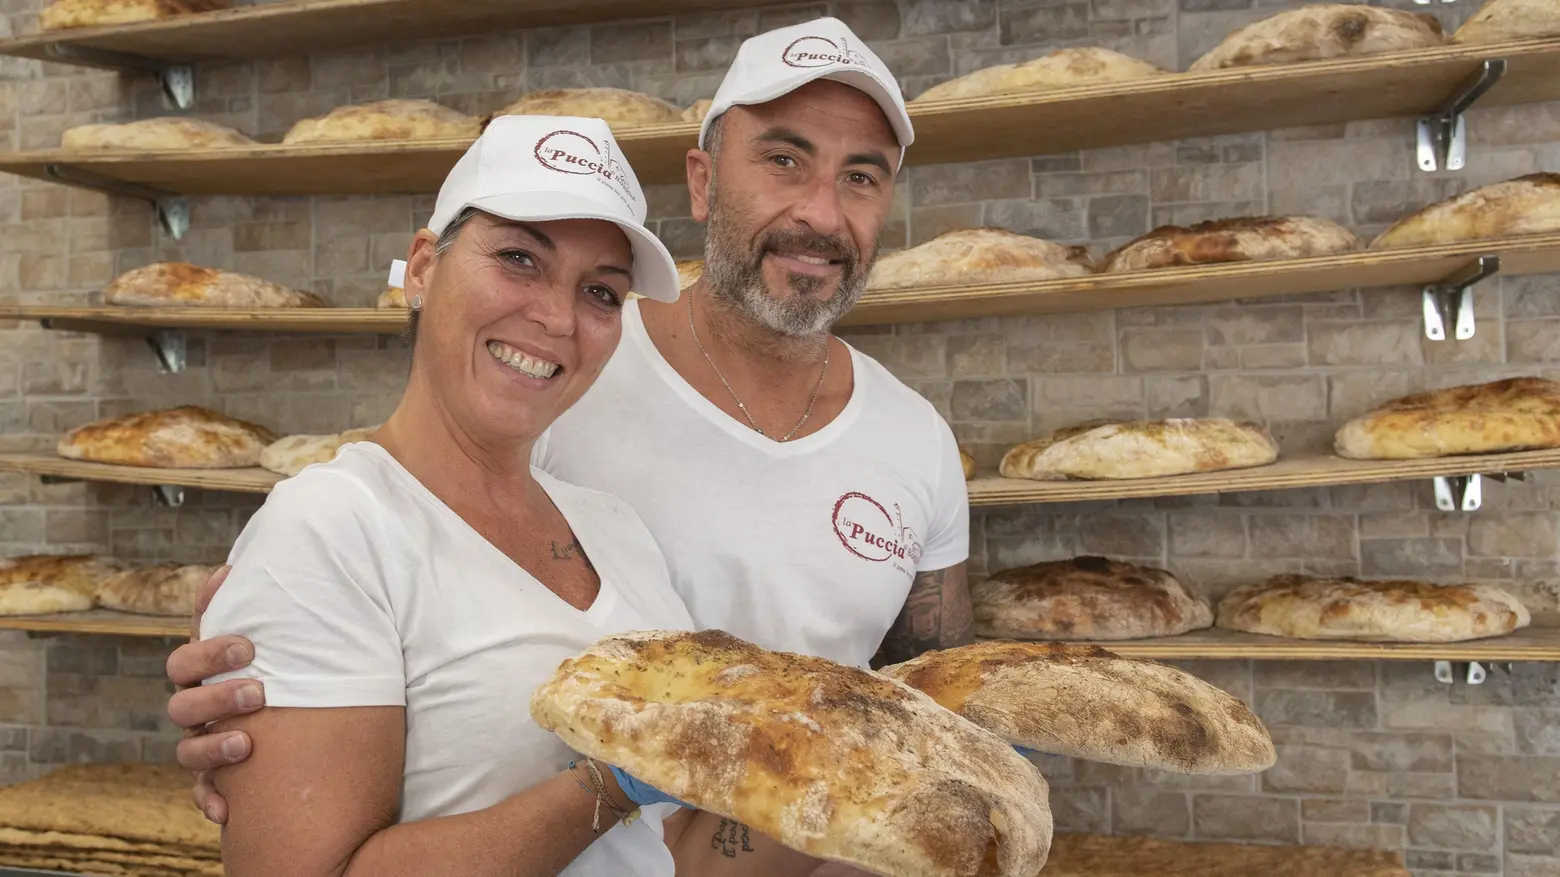 Invenzioni e cibo tradizionale  "Il nostro pane è la Puccia  ed è nato grazie a un errore"